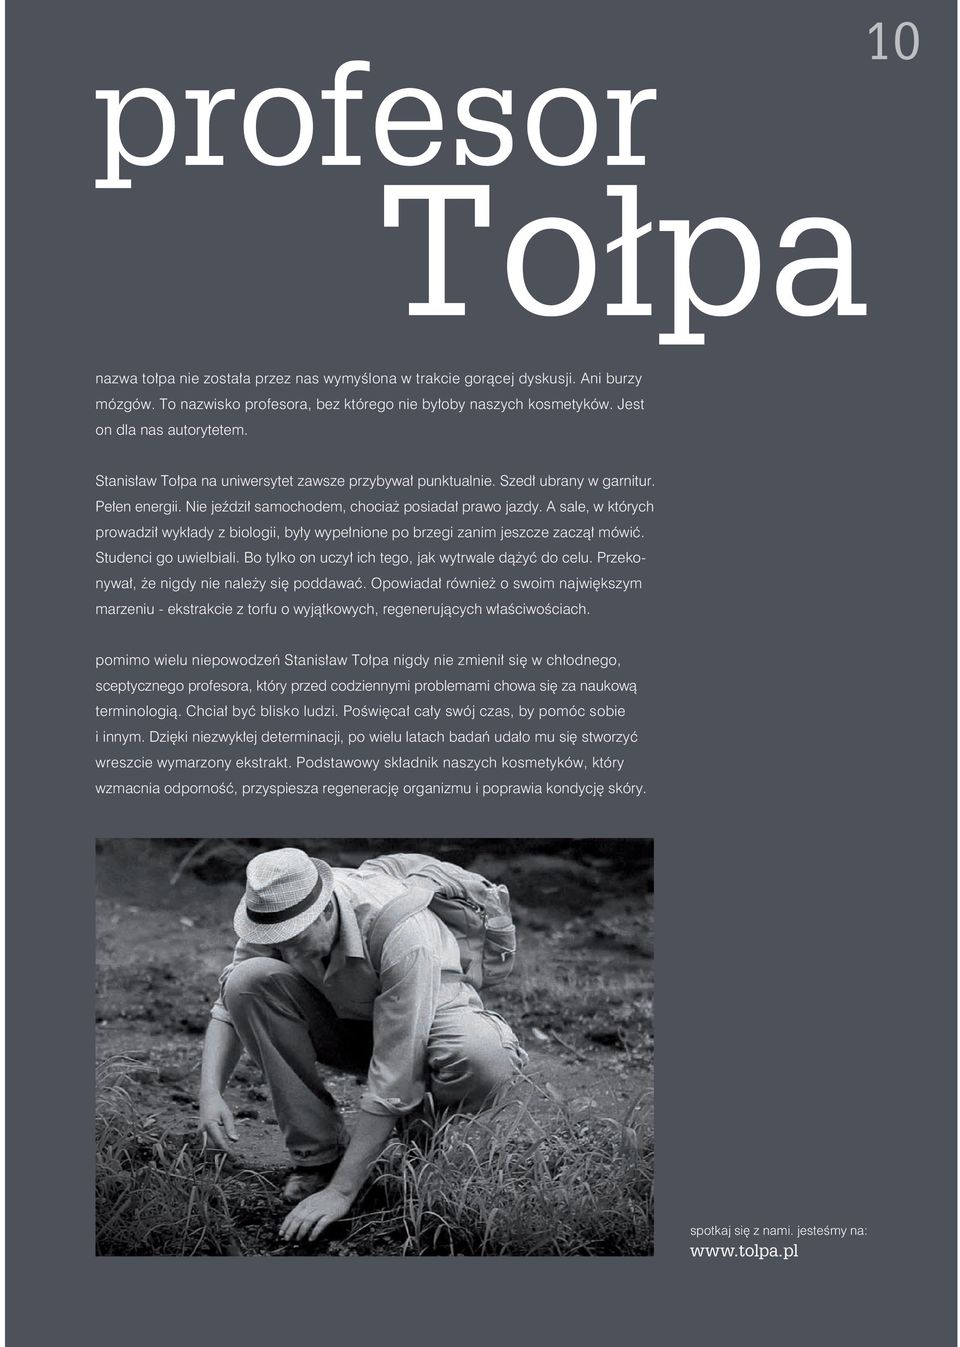 www.tolpa.